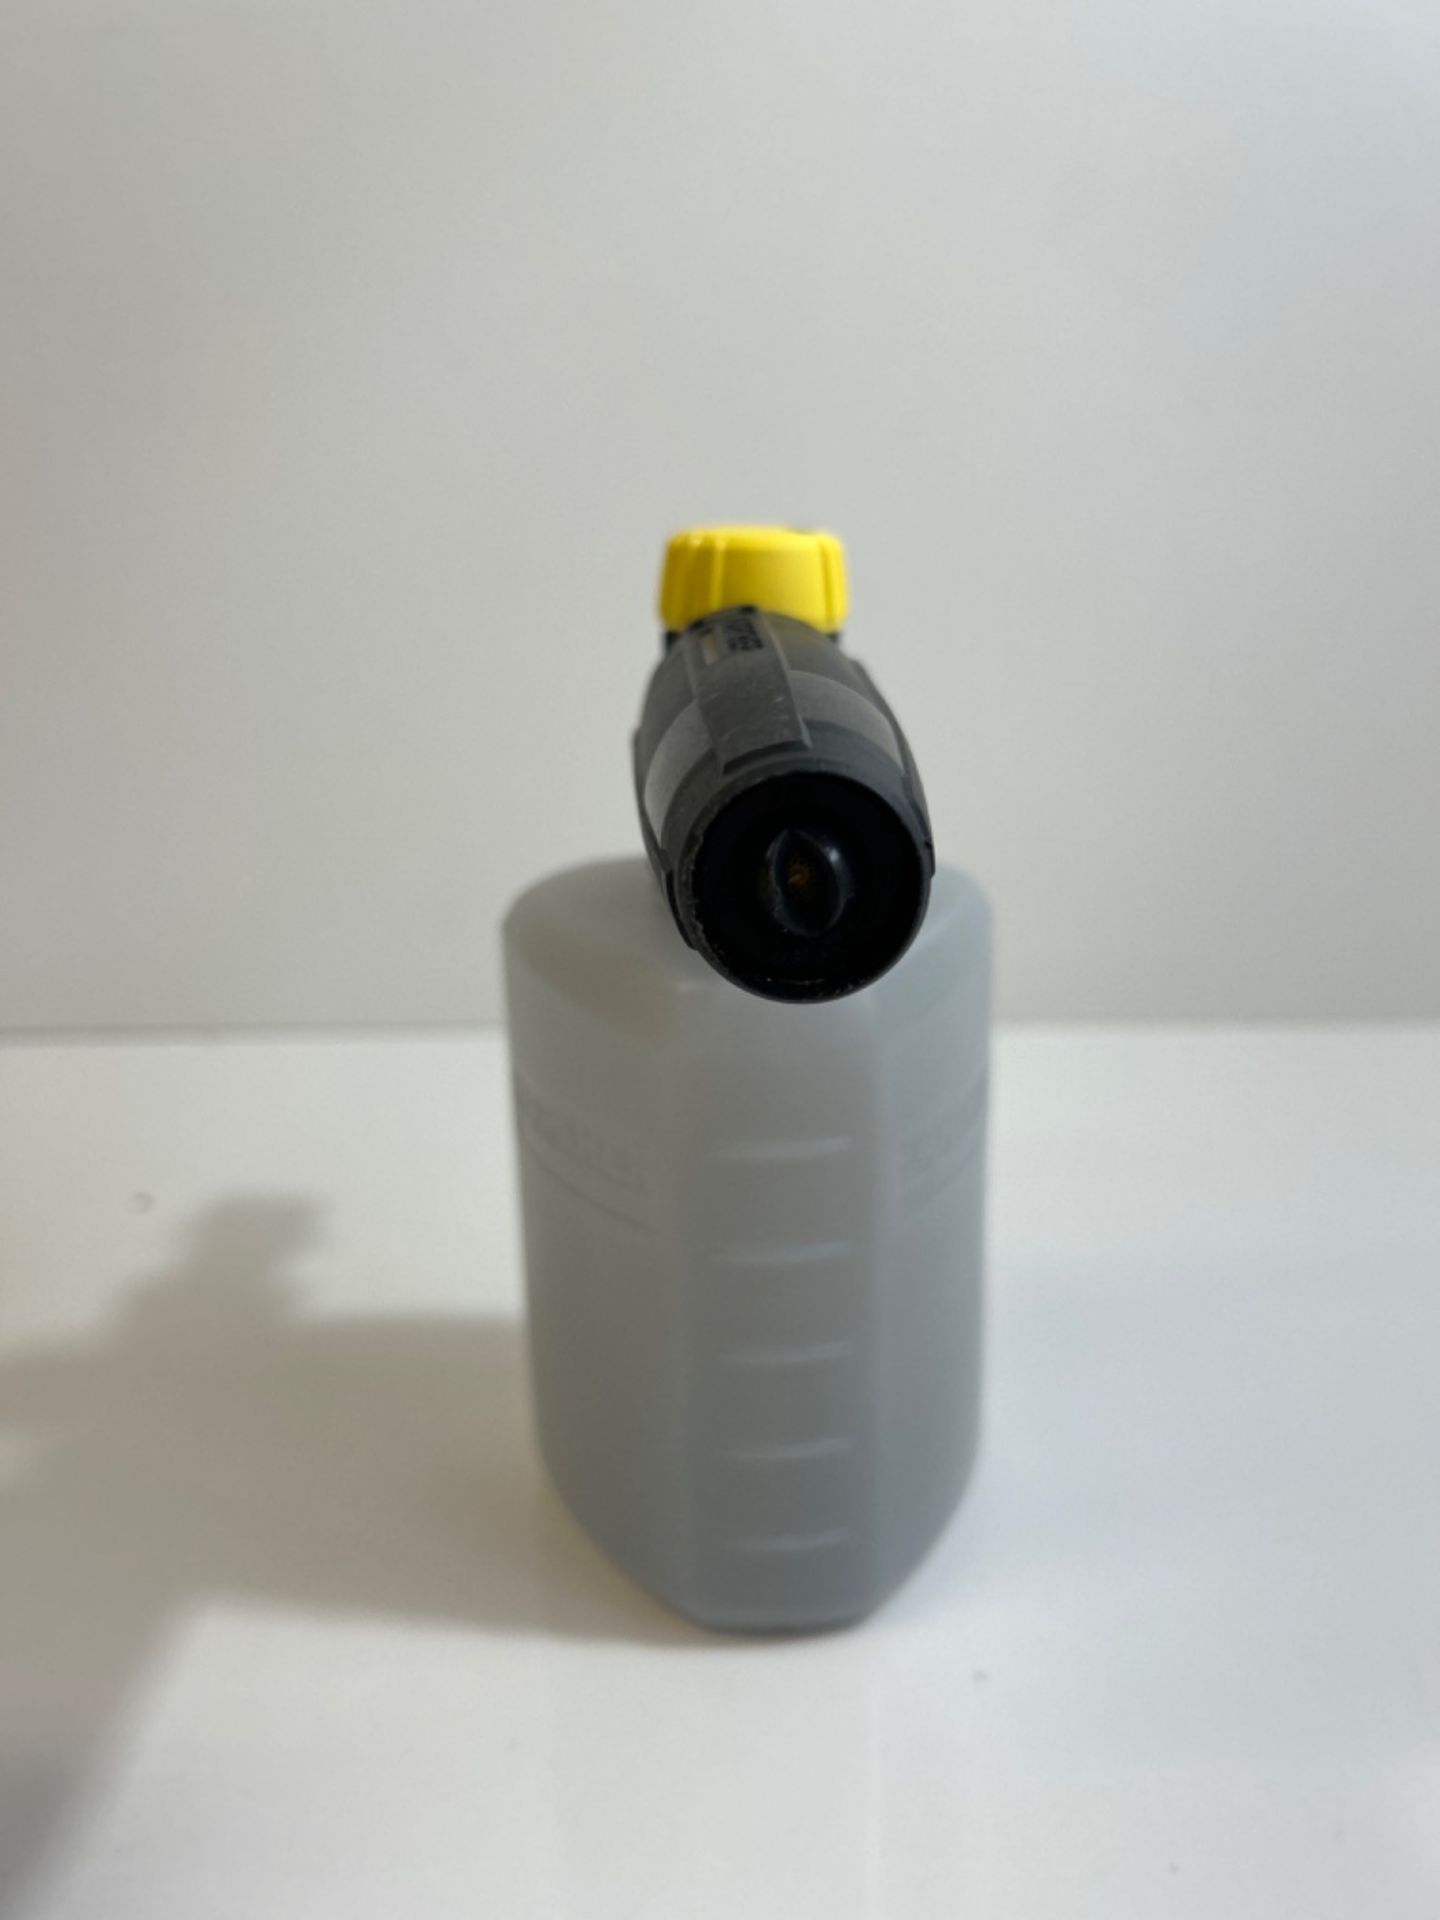 K??rcher FJ6 Foam Nozzle - Pressure Washer Accessory,Multi,0.6L - Image 3 of 3